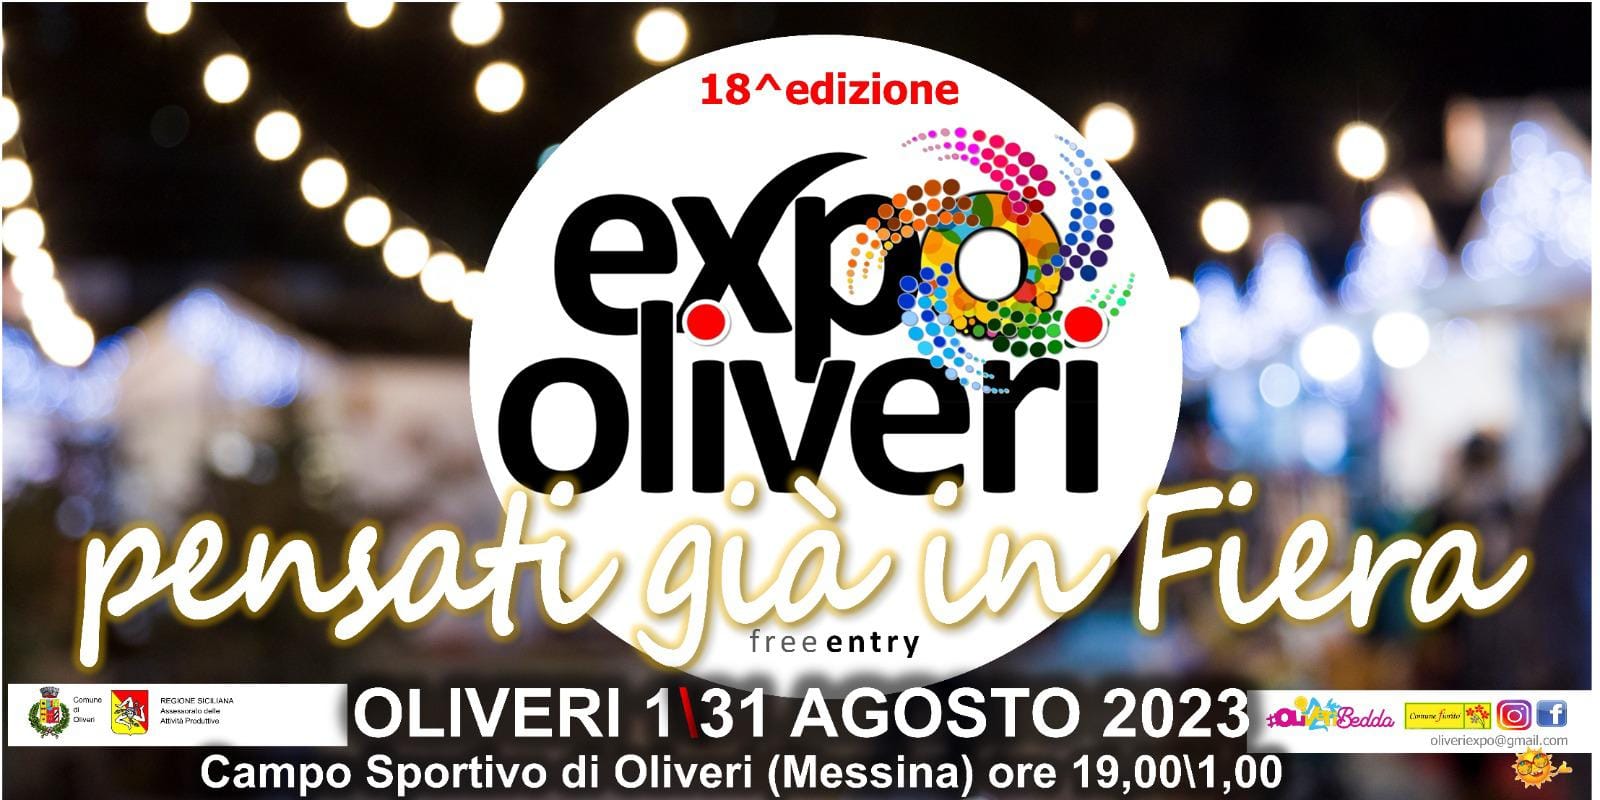 ExpOliveri 2023 pensati in fiera Oliveri Expo 2023 aziende partecipanti